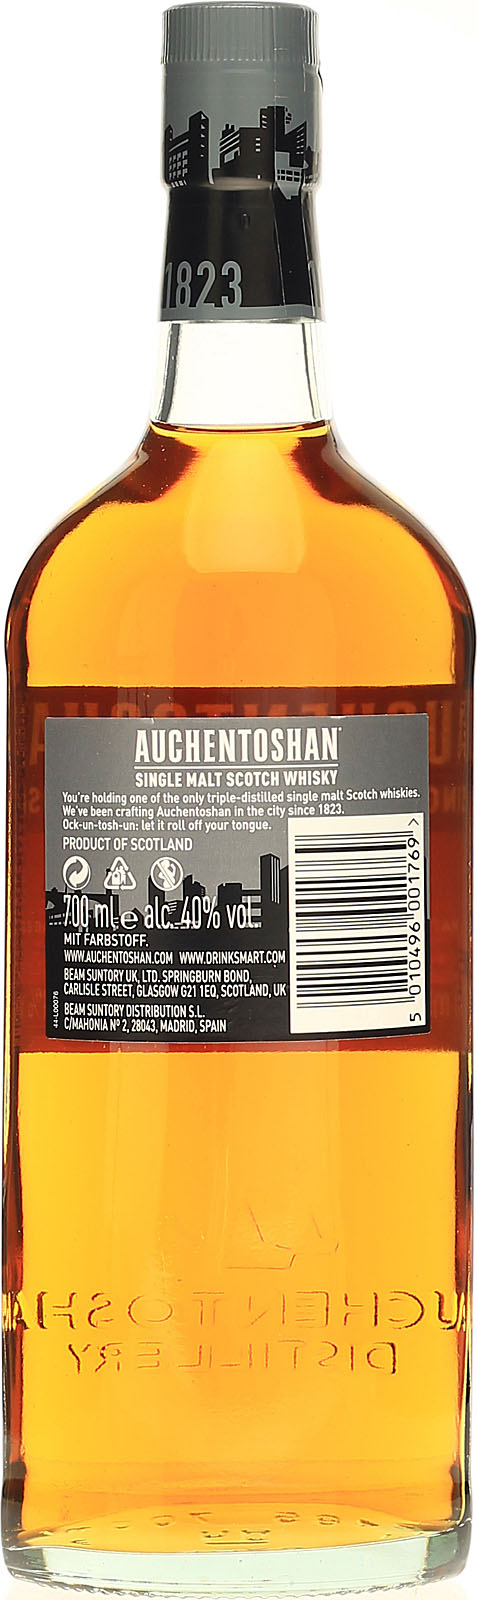 Lowland Auchentoshan 0,7l 12 Jahre Whisky - Single Malt